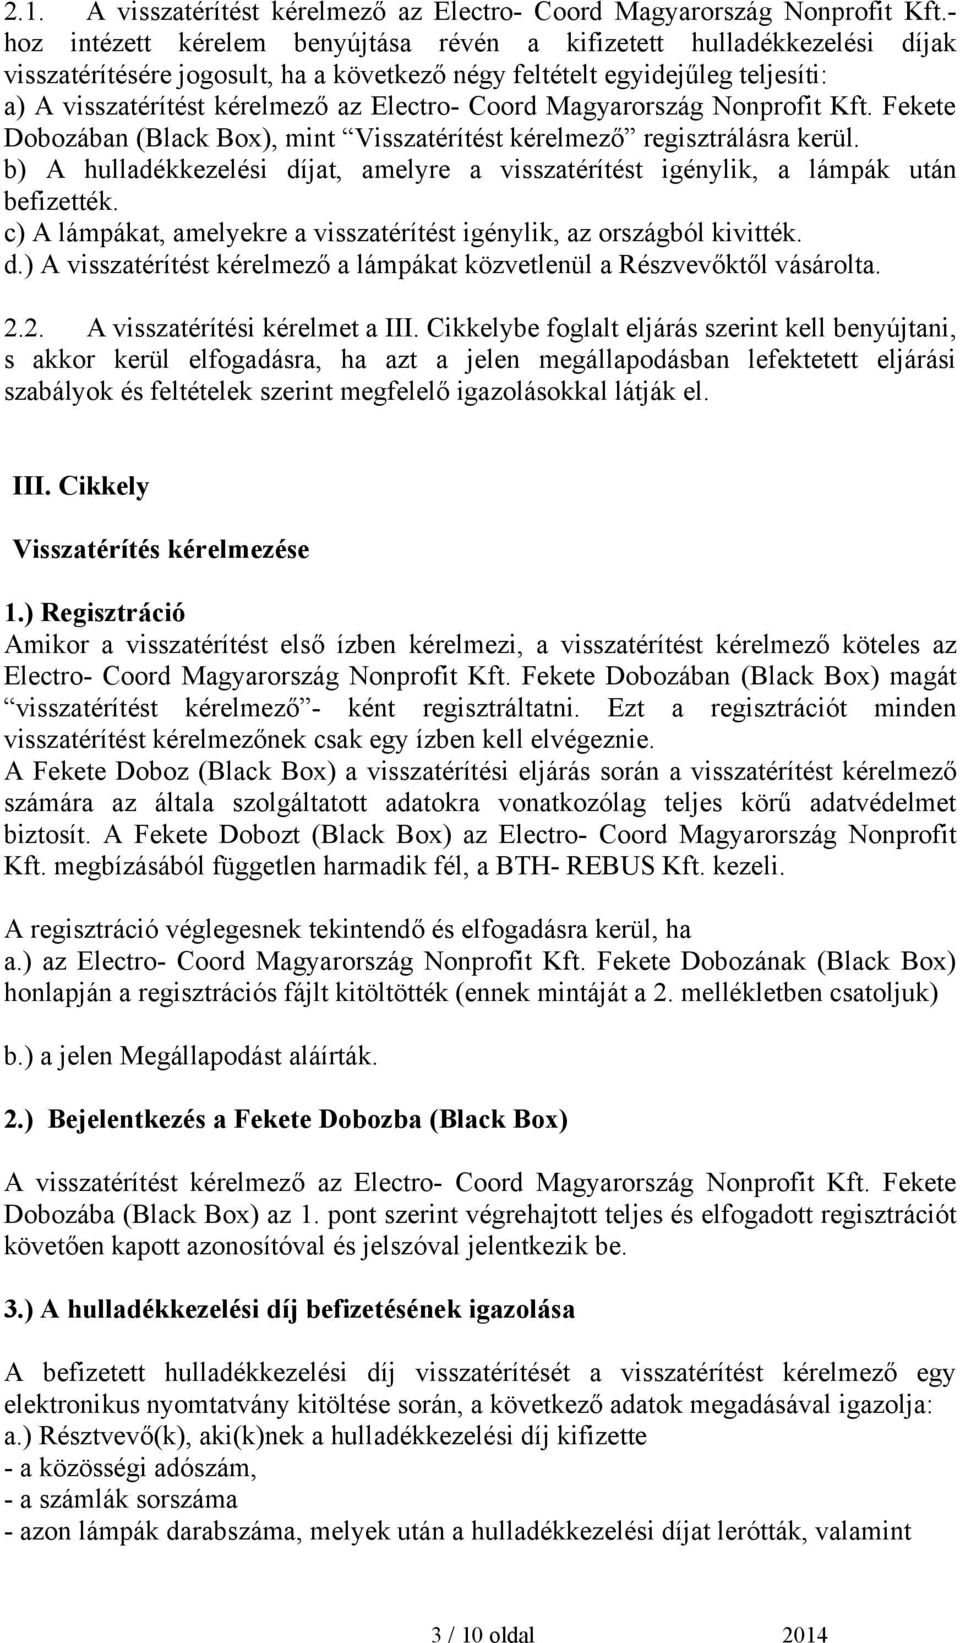 Coord Magyarország Nonprofit Kft. Fekete Dobozában (Black Box), mint Visszatérítést kérelmező regisztrálásra kerül.